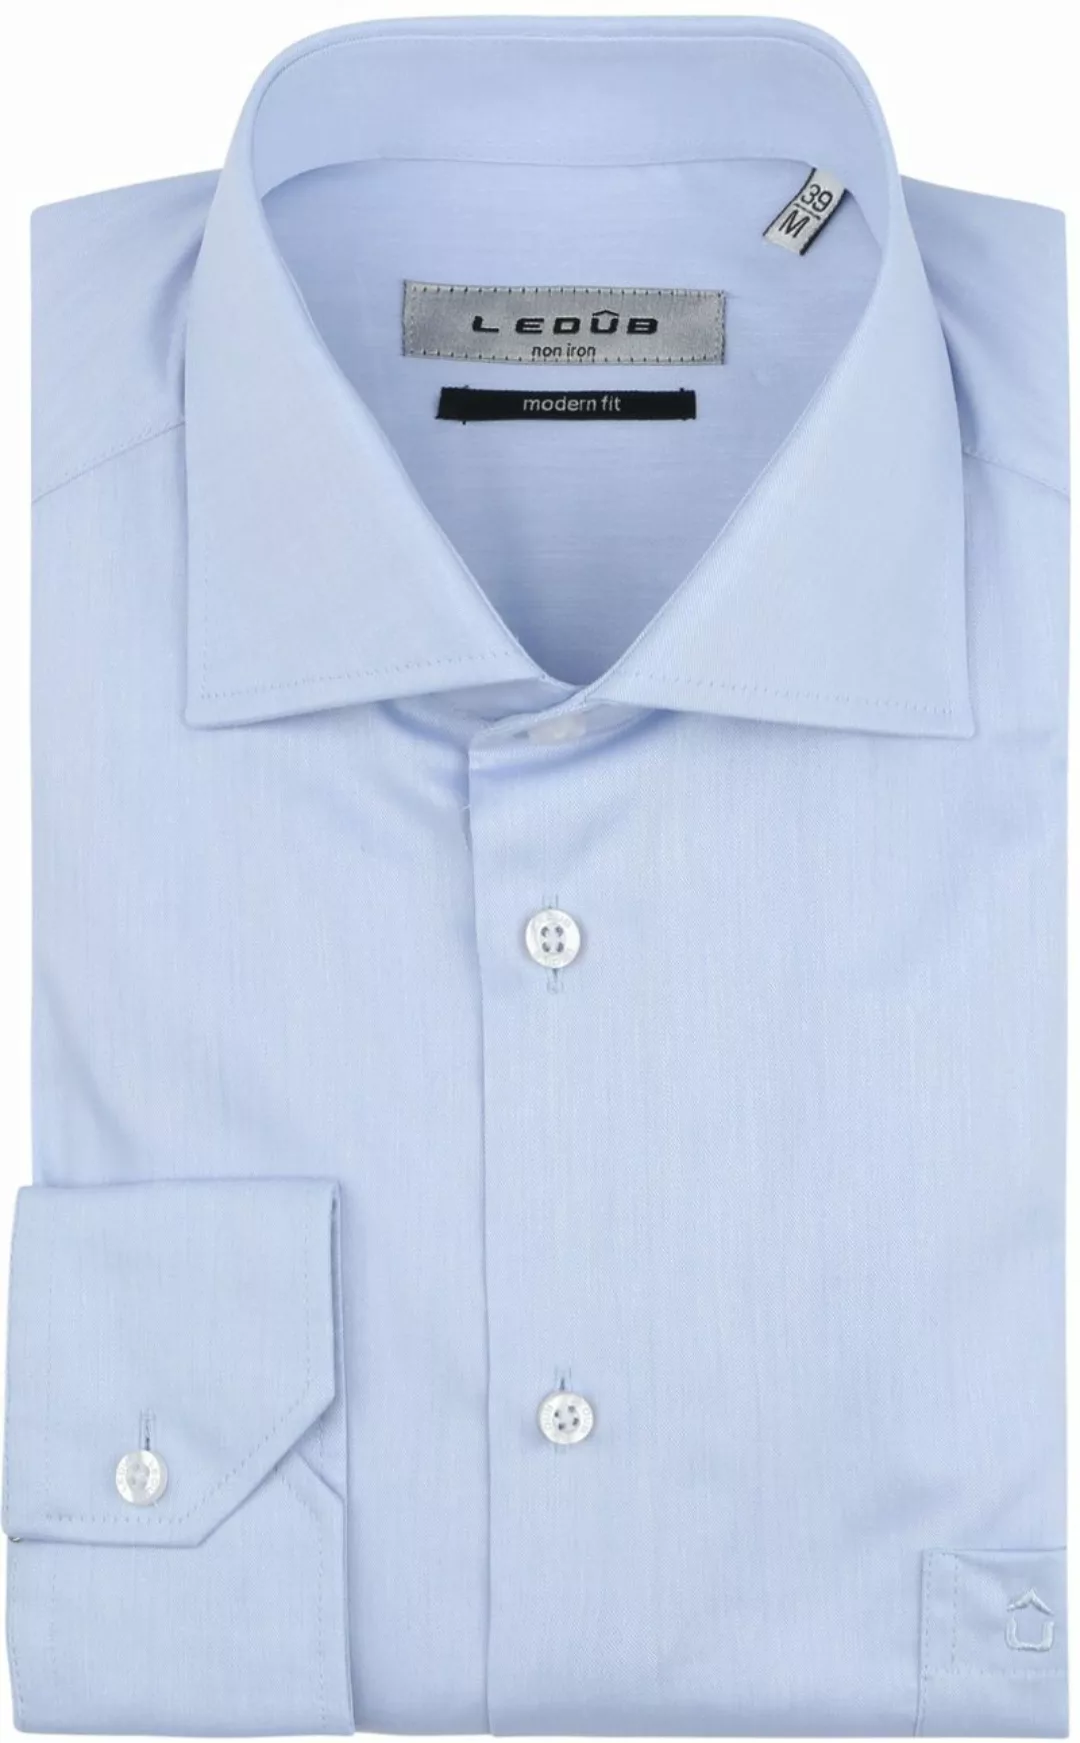 Ledub Hemd Hellblau Brusttassche Extra Long Sleeves - Größe 41 günstig online kaufen